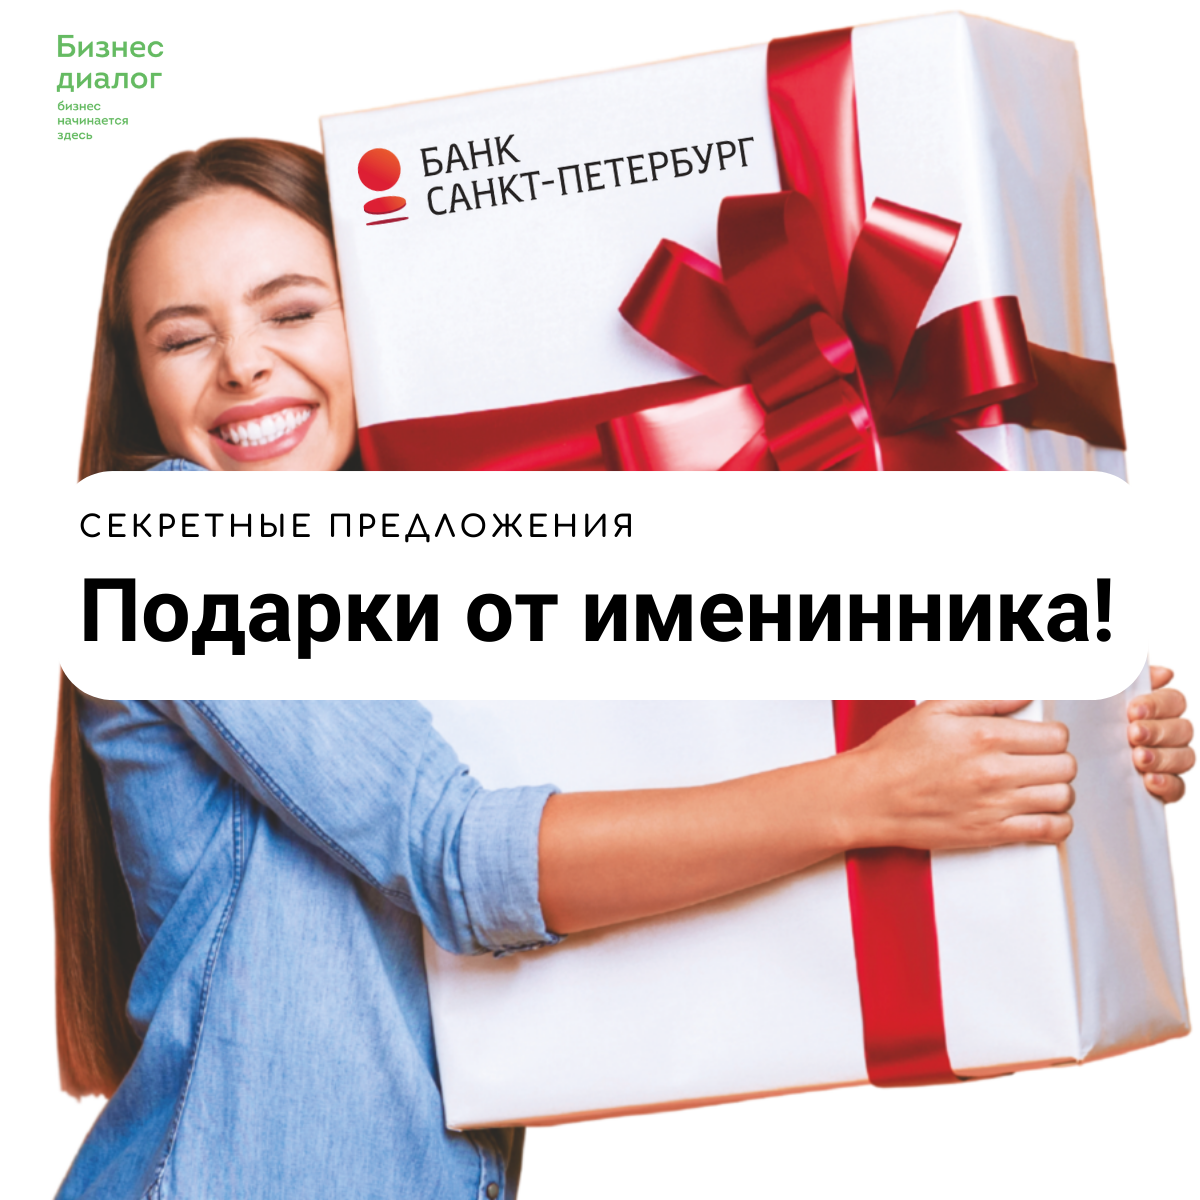 День рождение Банка «Санкт-Петербург»